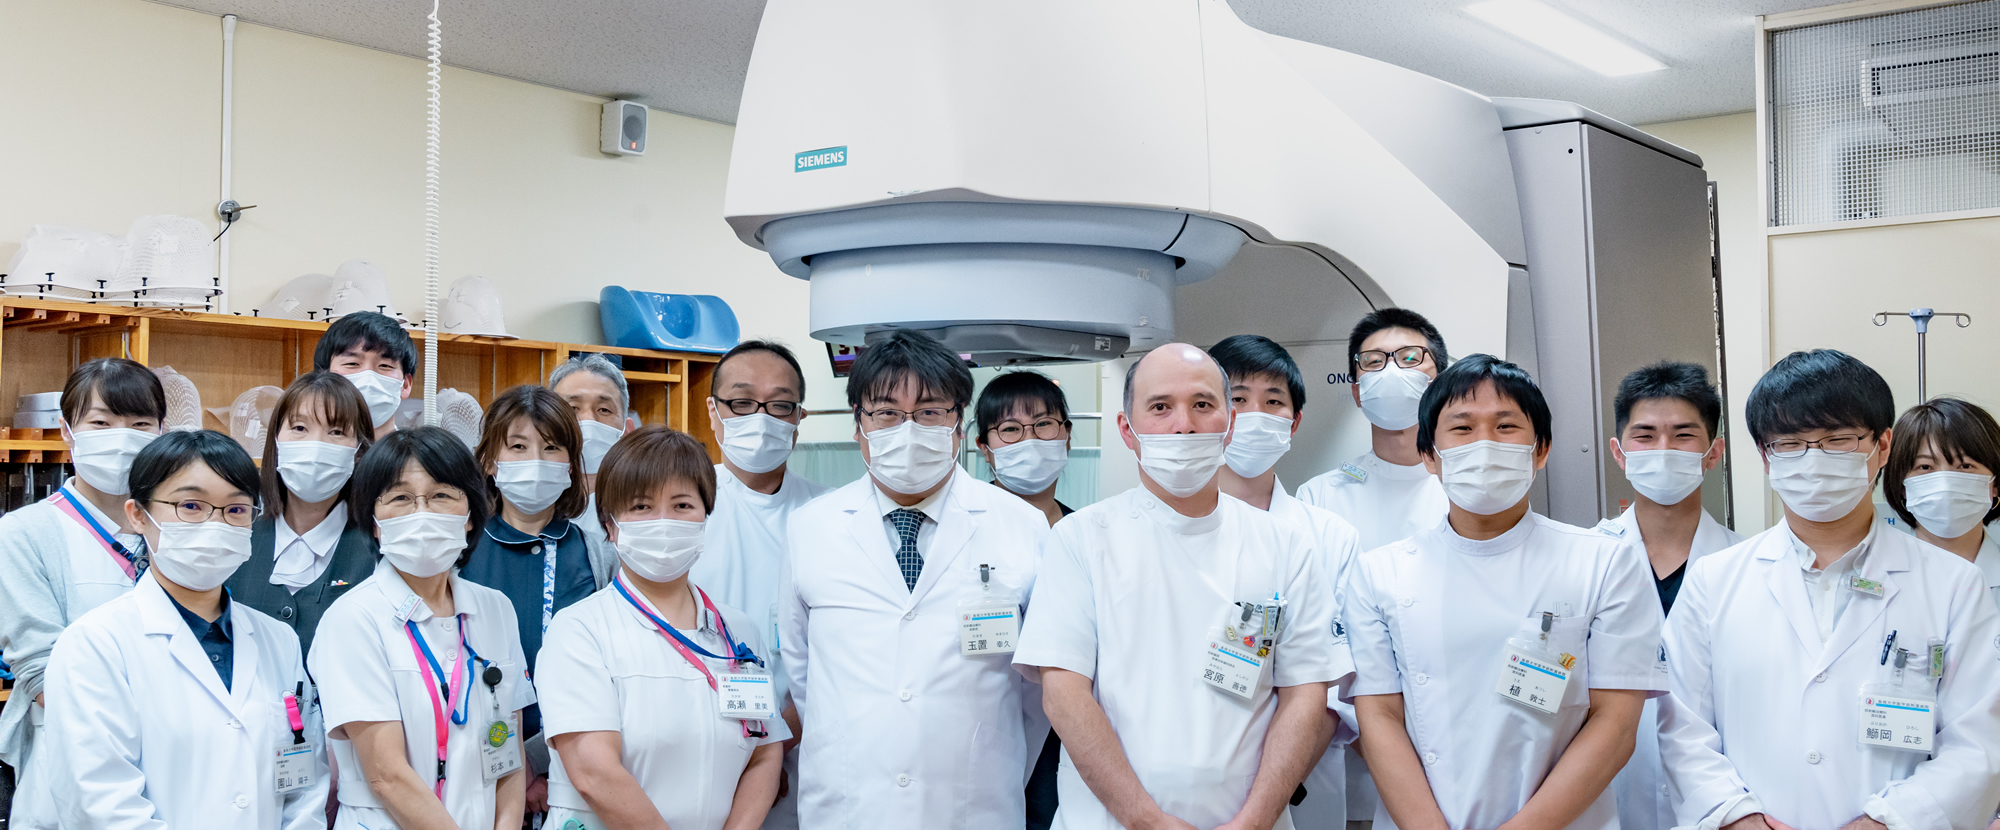 島根大学医学部附属病院放射線治療科